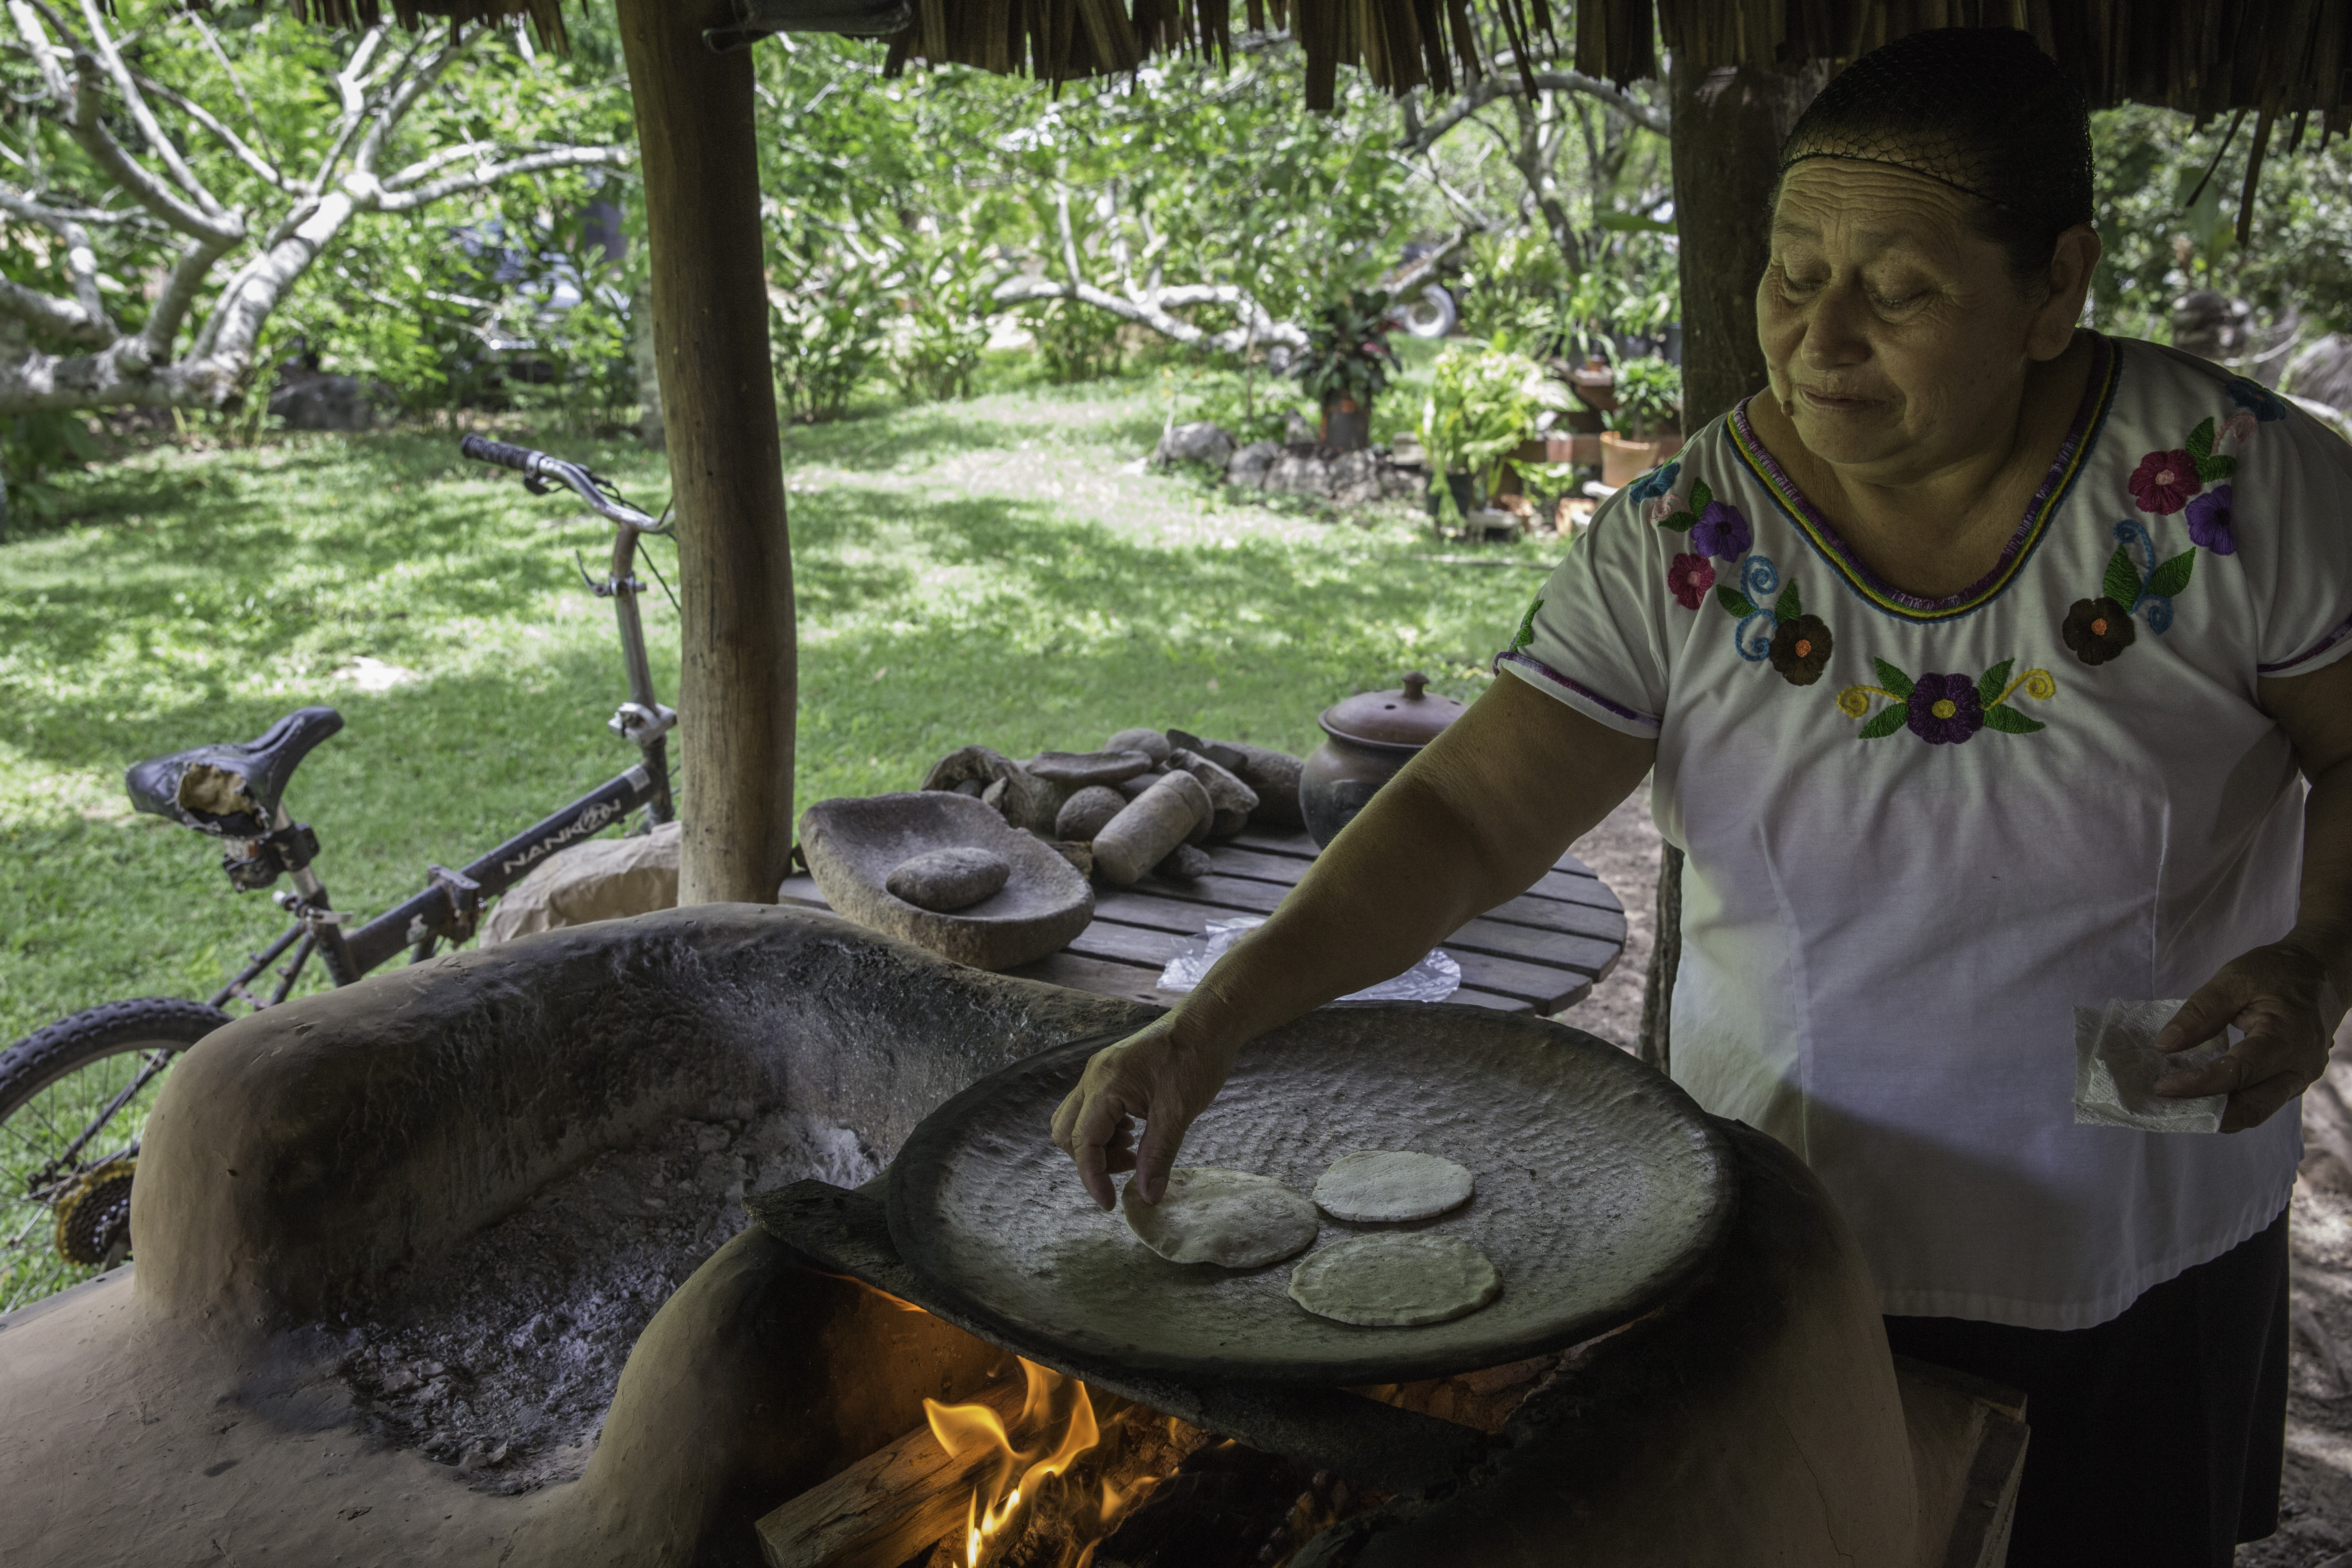 A woman makes tortillas over an open stove